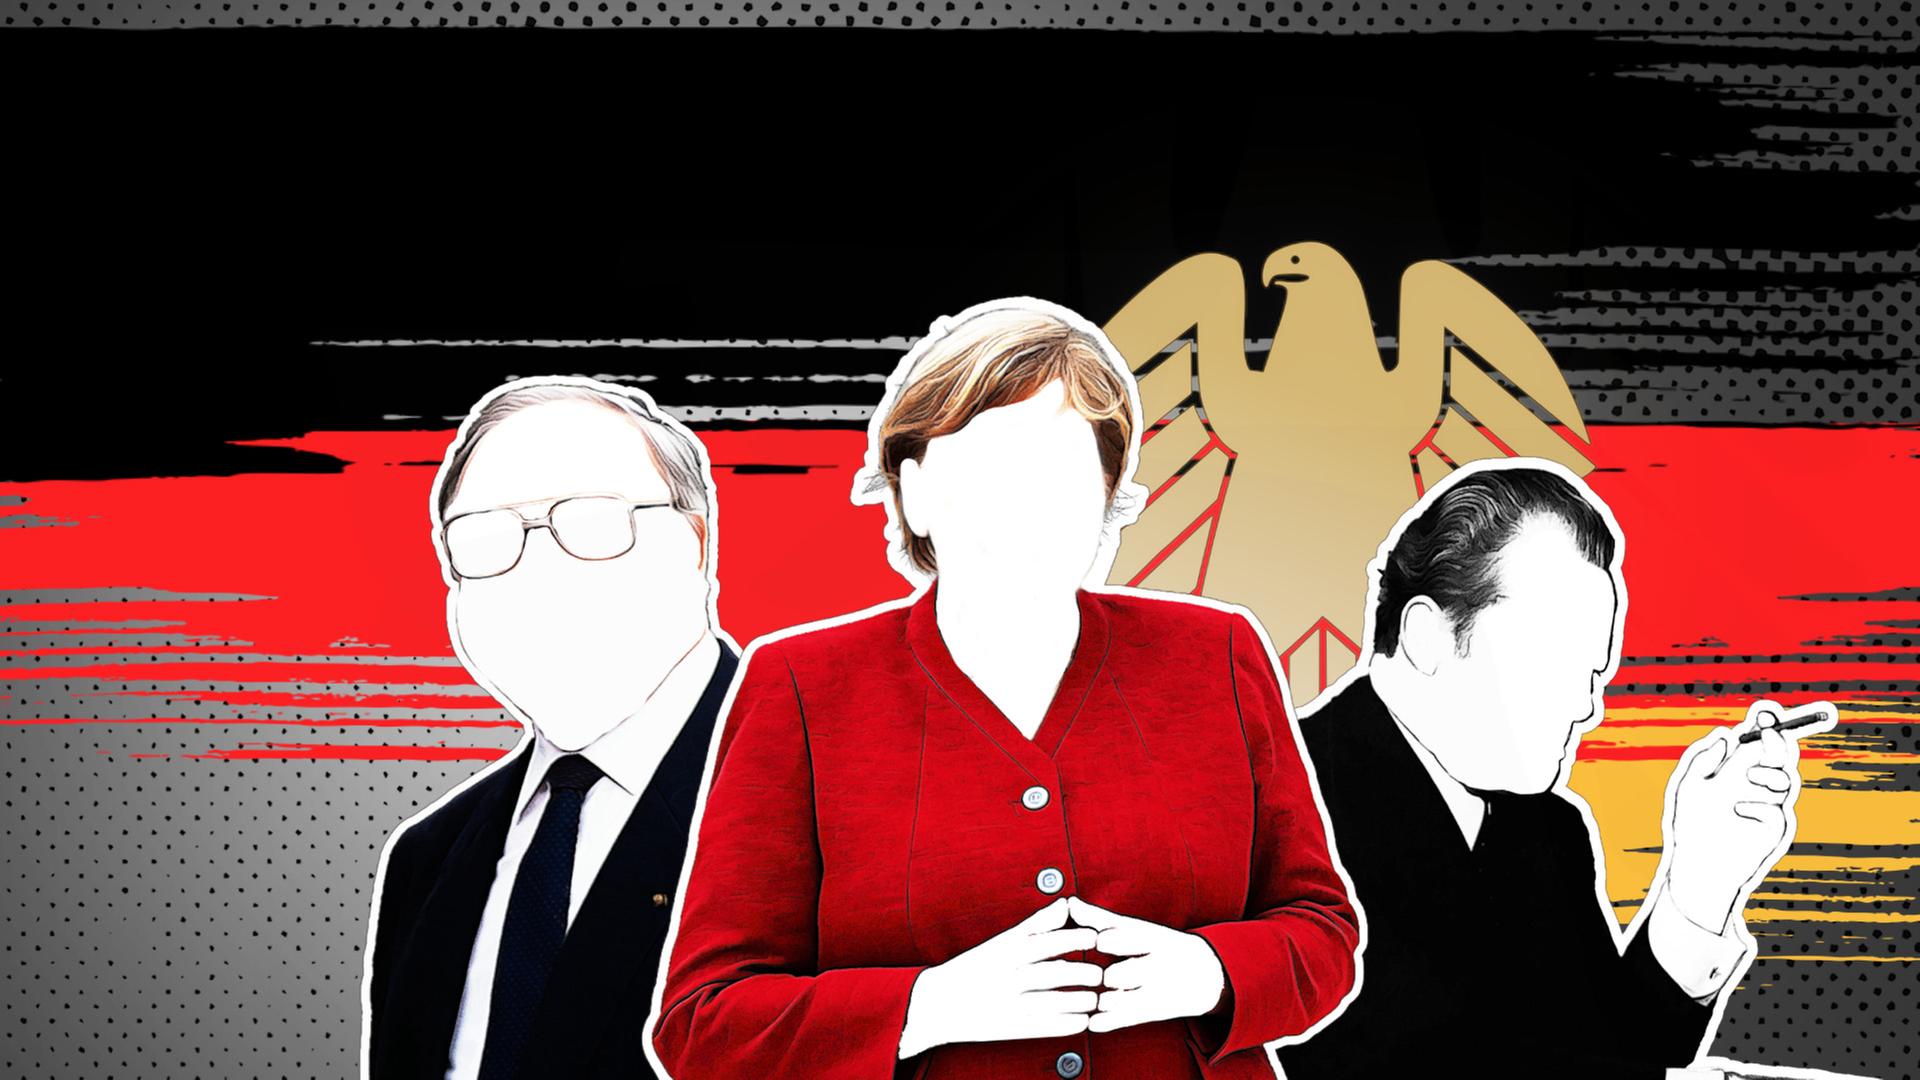 Zeichnung von Merkel, Kohl und Brandt vor schwarz-rot-goldenem Hintergrund